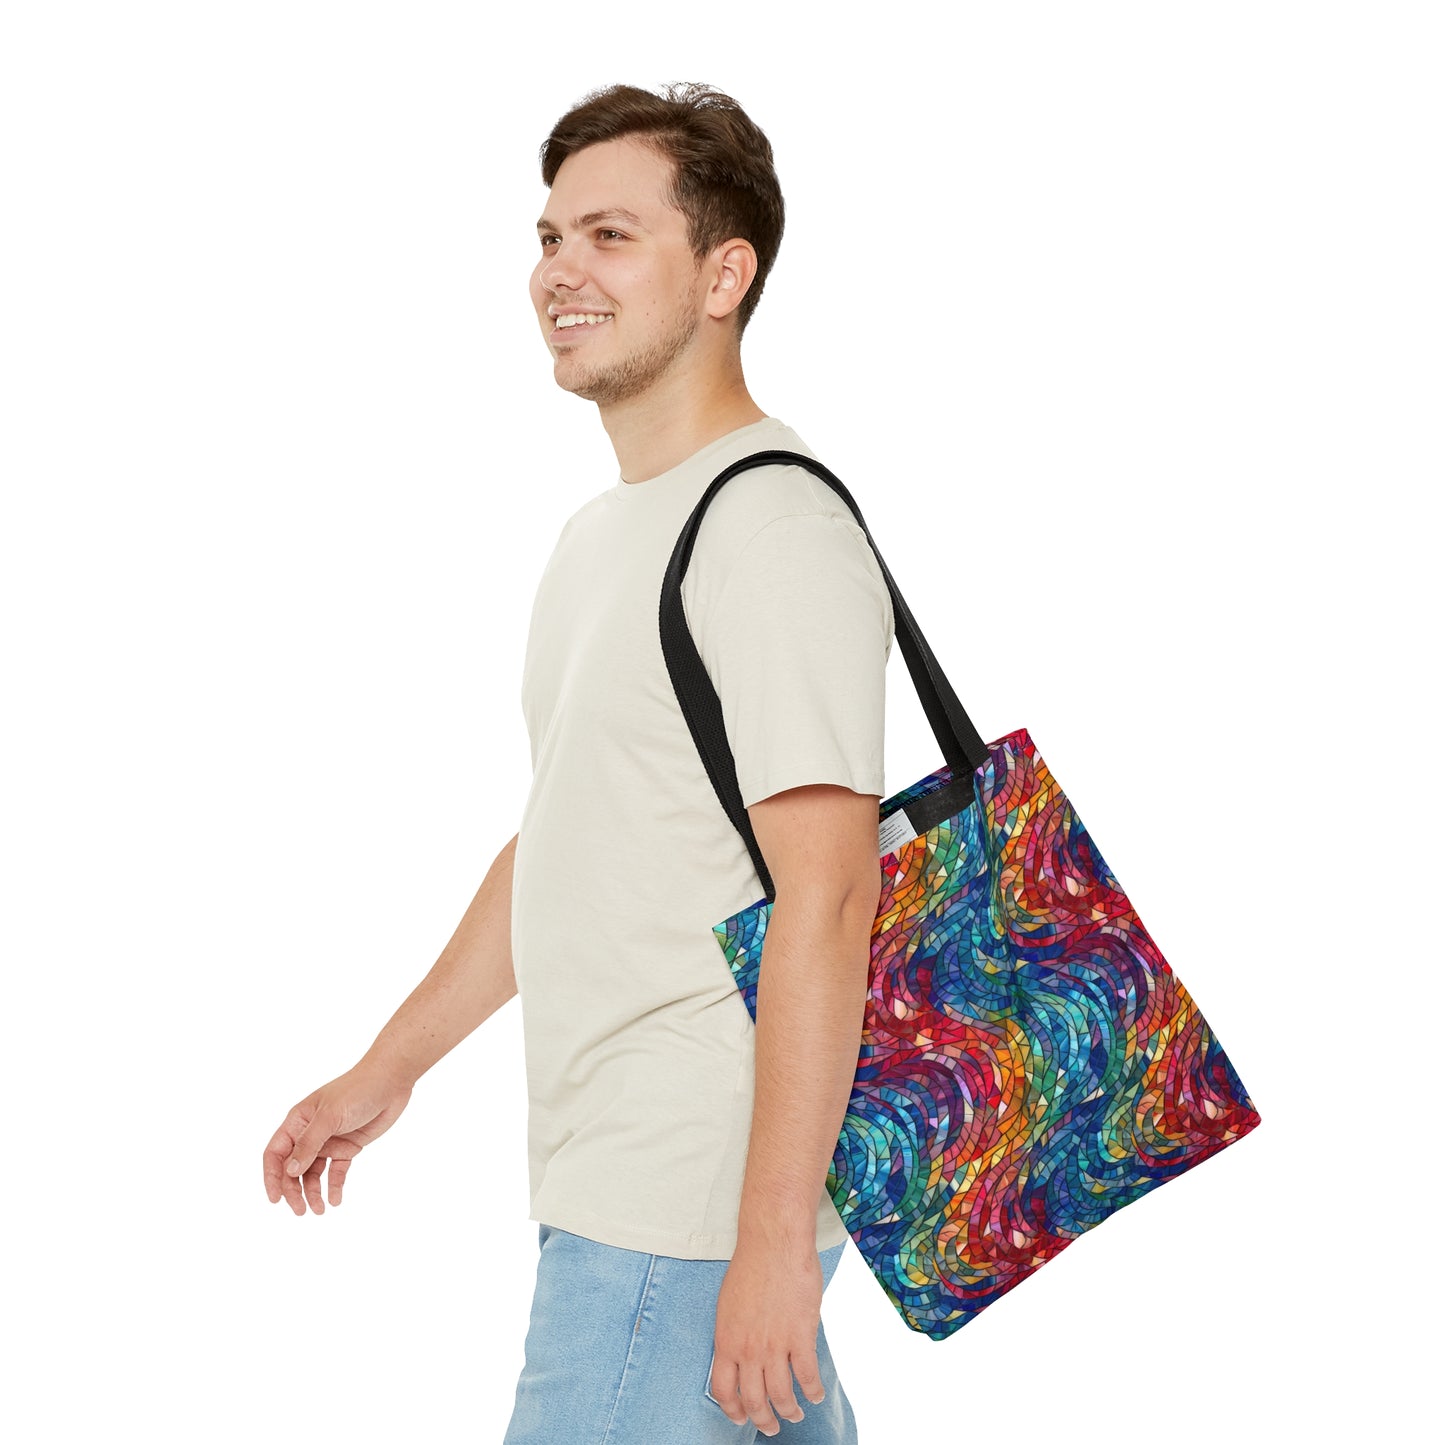 Beautiful and Vibrant - Gemstone Swirl Mosaic 17 - Useful, Multipurpose Bag -Tote Bag (AOP)